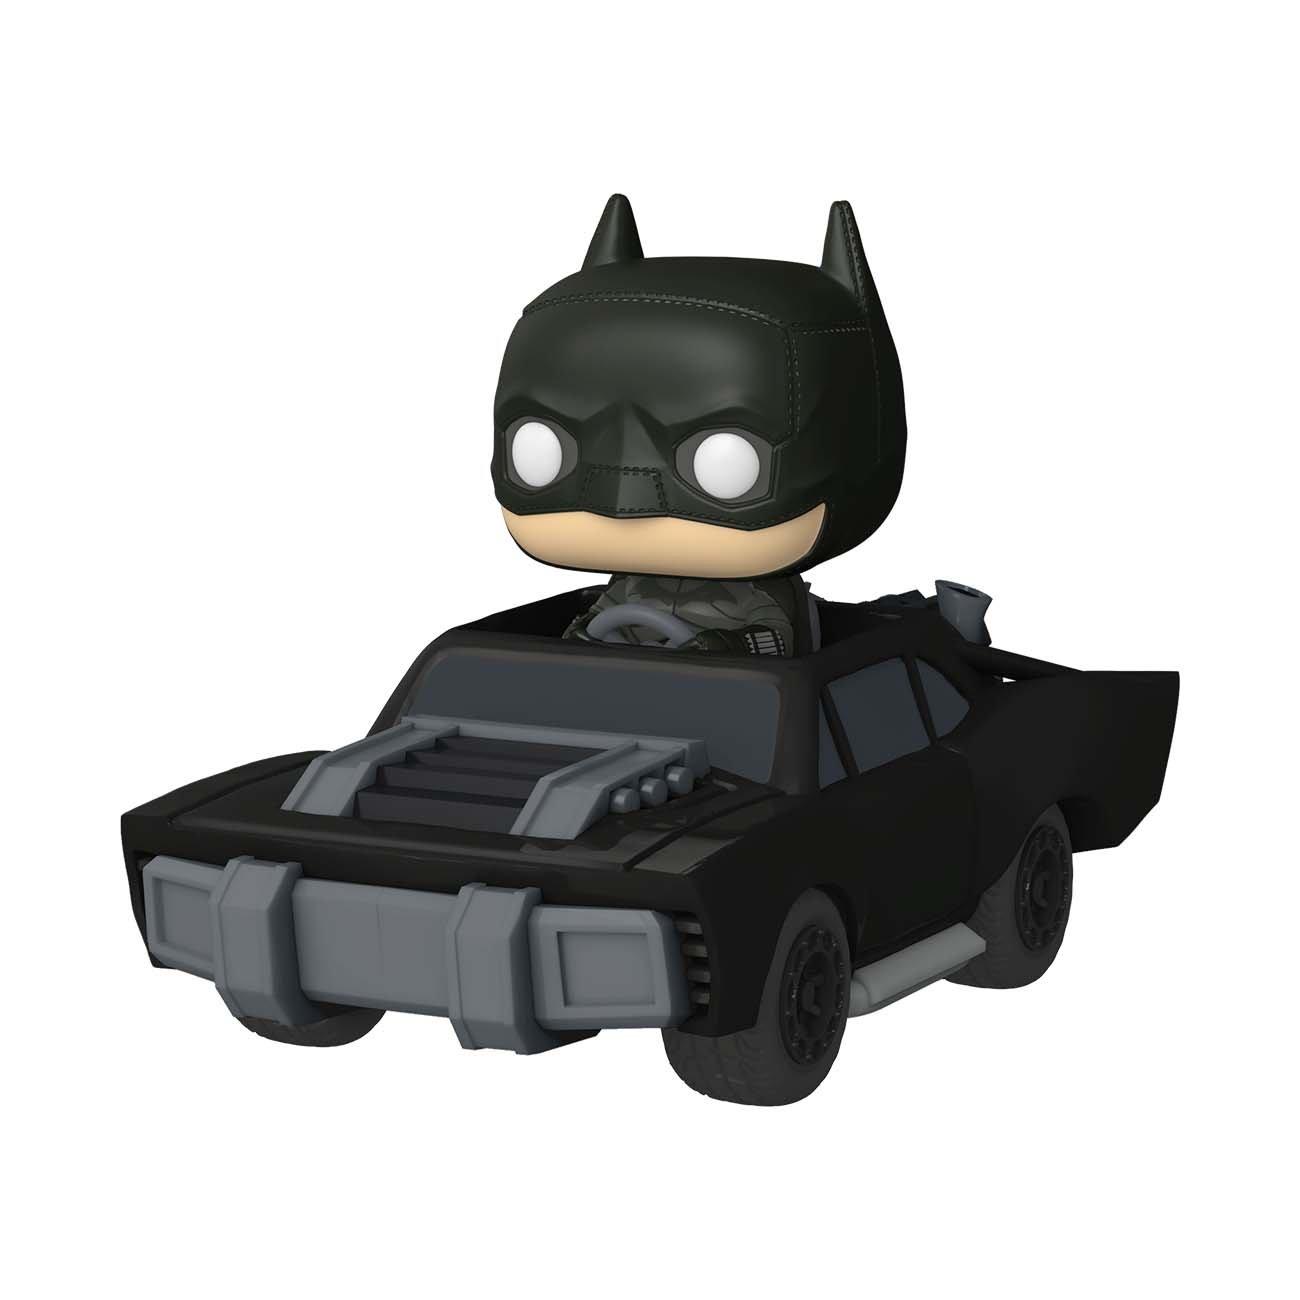 Batman in the batmobile Funko pop